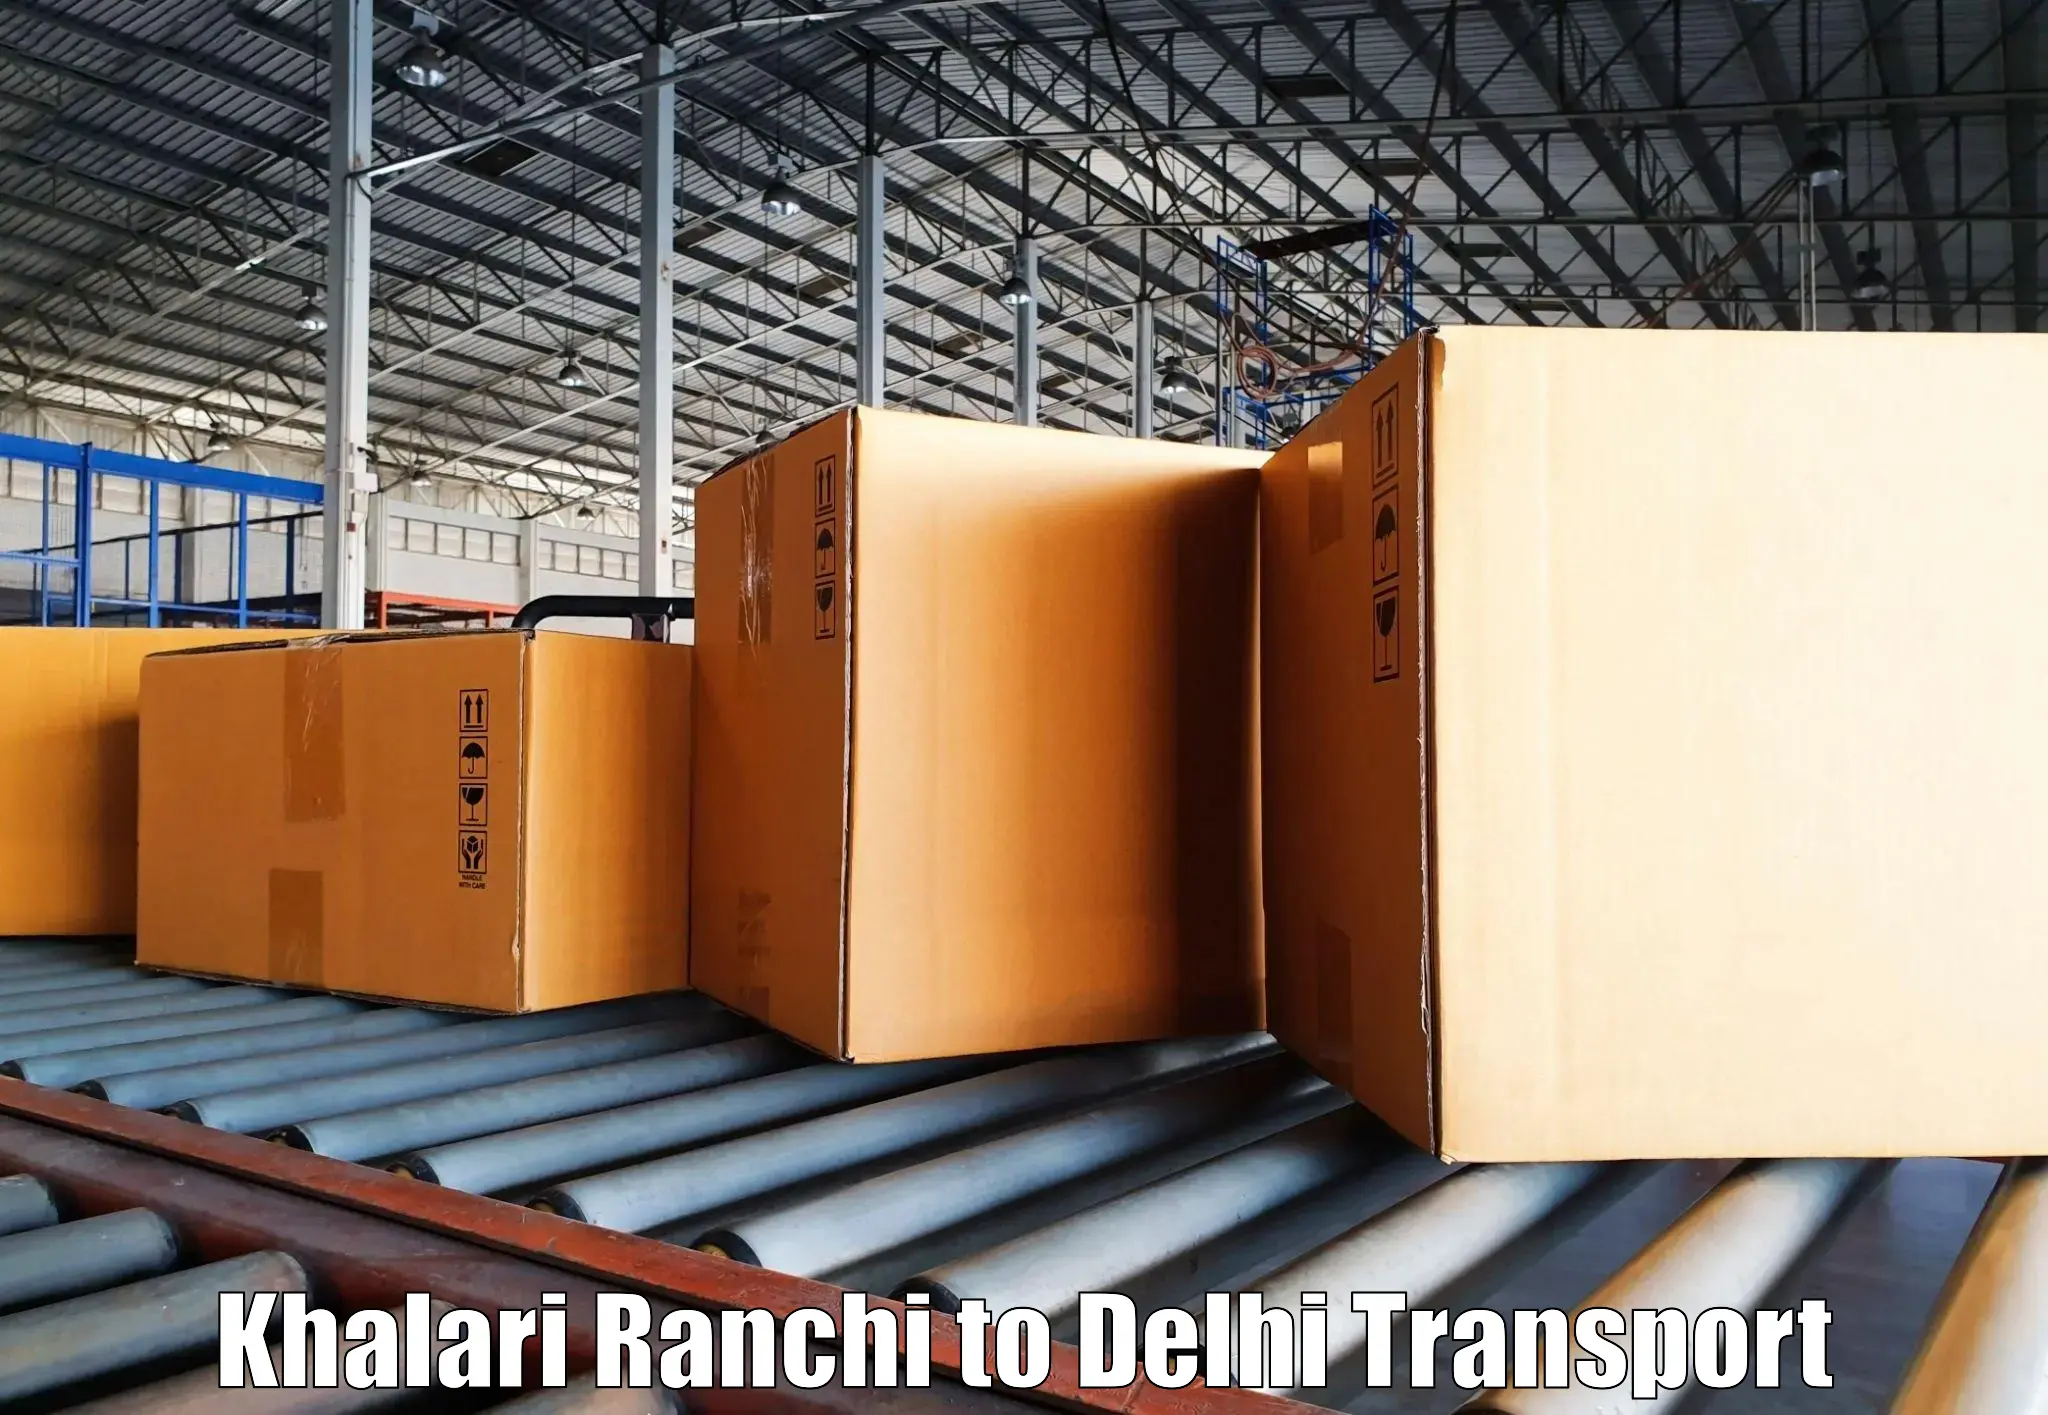 Transport in sharing Khalari Ranchi to Sarojini Nagar